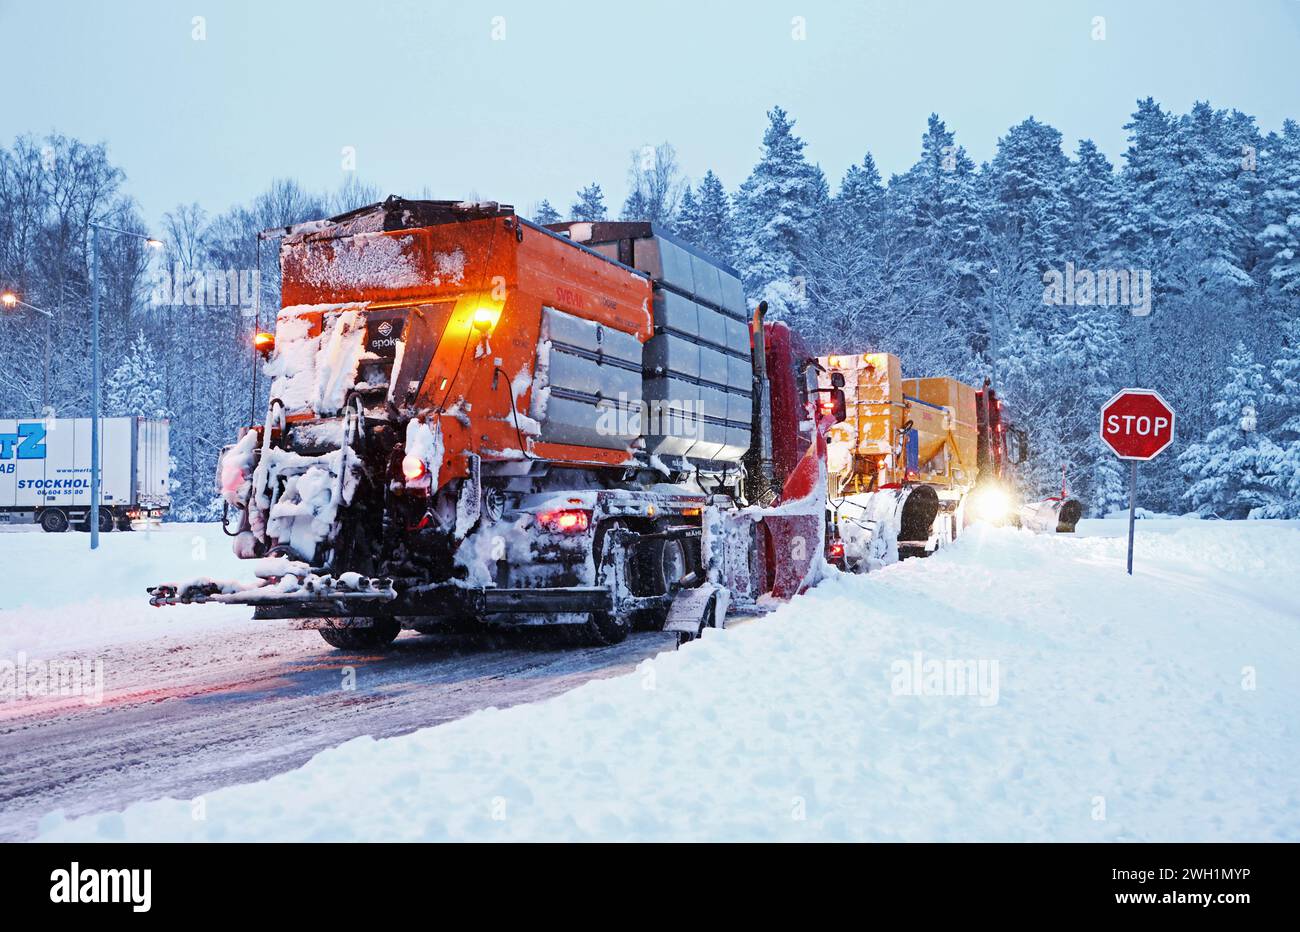 Météo saisonnière, fortes chutes de neige sur le comté de Östergötland, Suède, mercredi matin. Dans l'image : chasse-neige de Svevia attendant sur les lieux. Banque D'Images